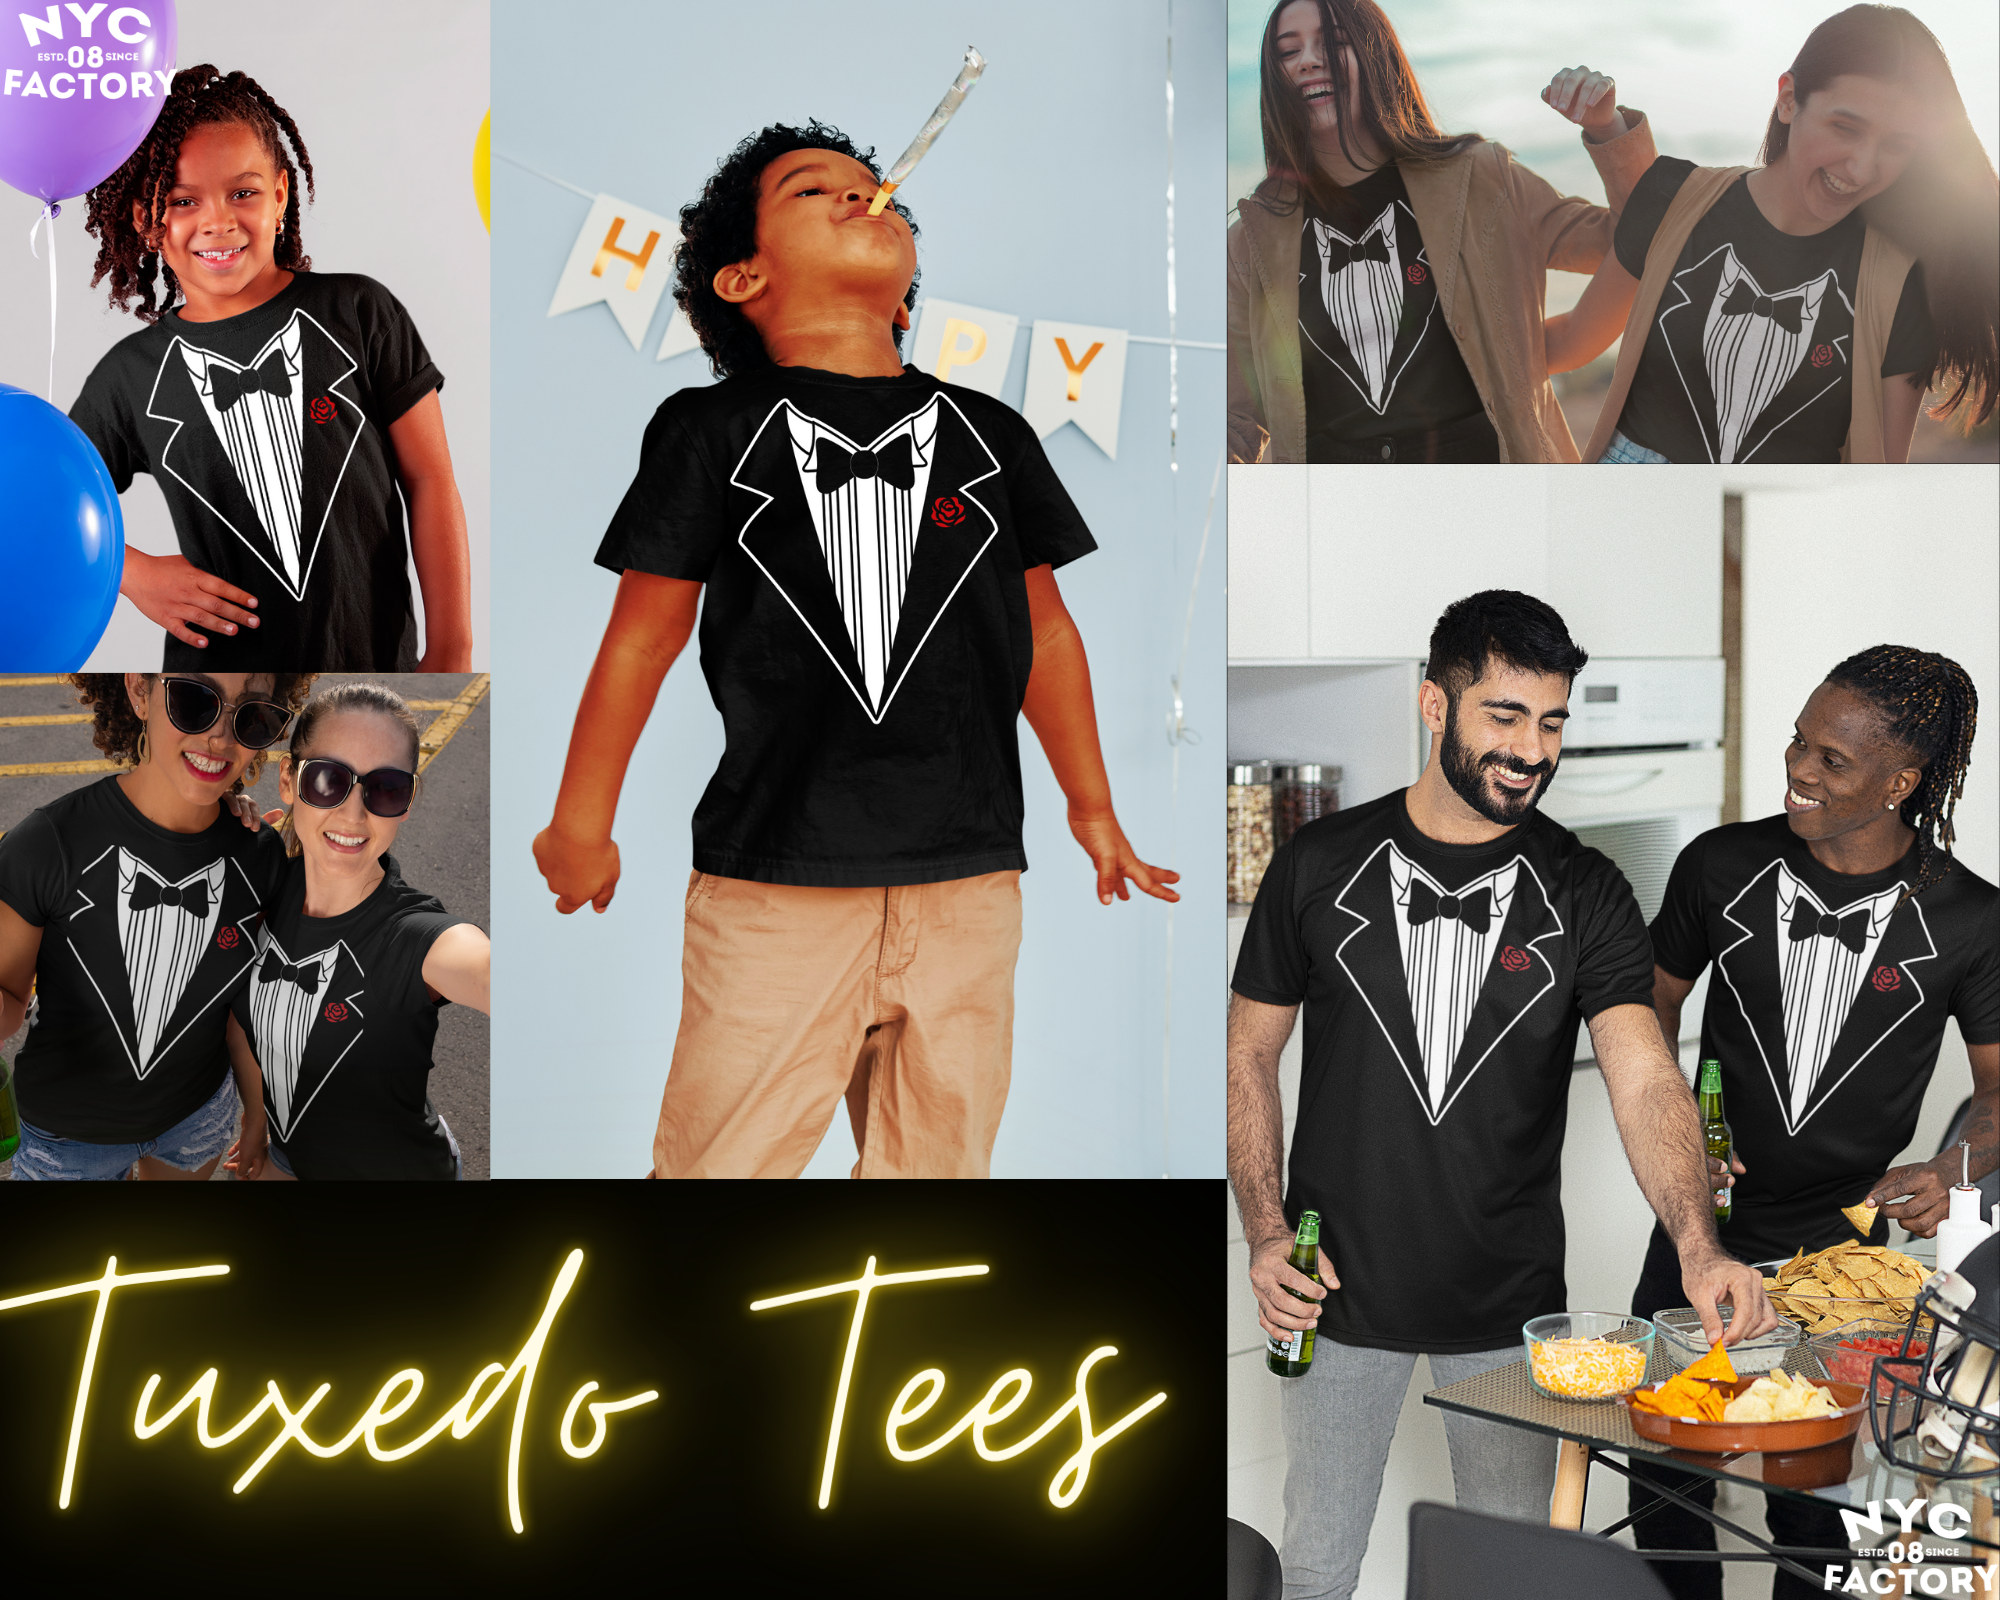 Tuxedo Tees / Funny Party T-Shirts